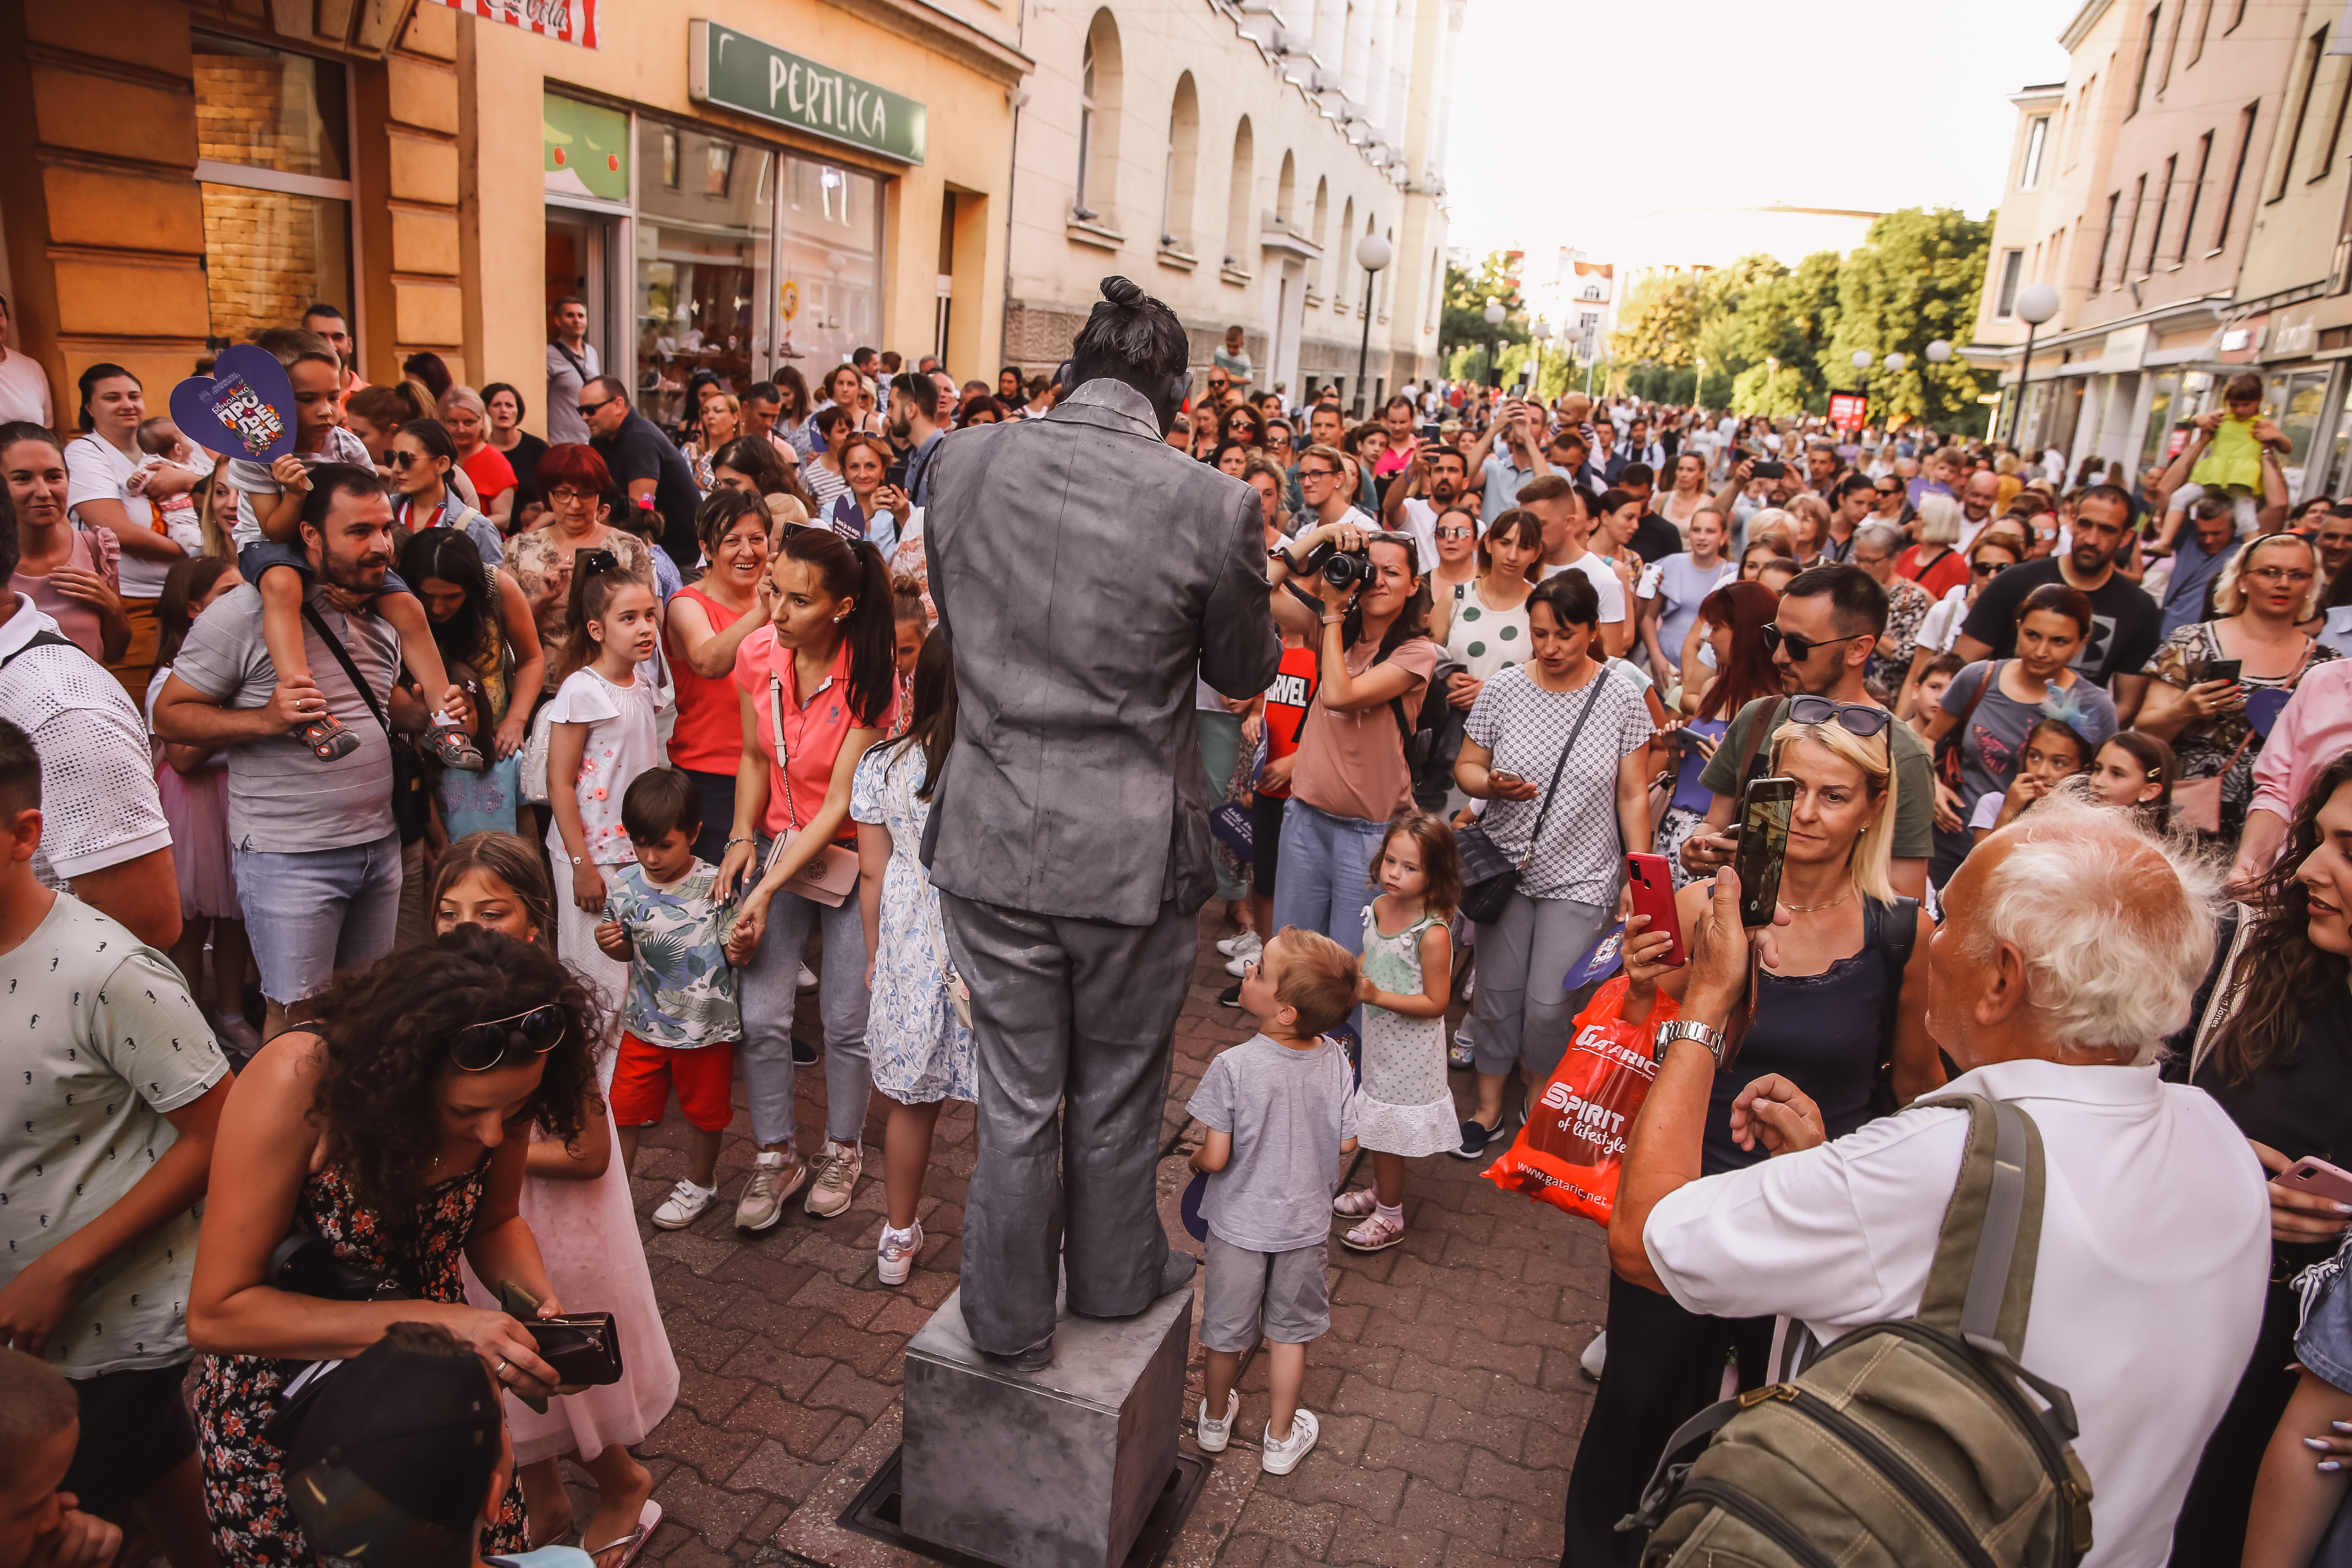  ТротоАрт - један од нових фестивала, који је привукао велики број суграђана и туриста